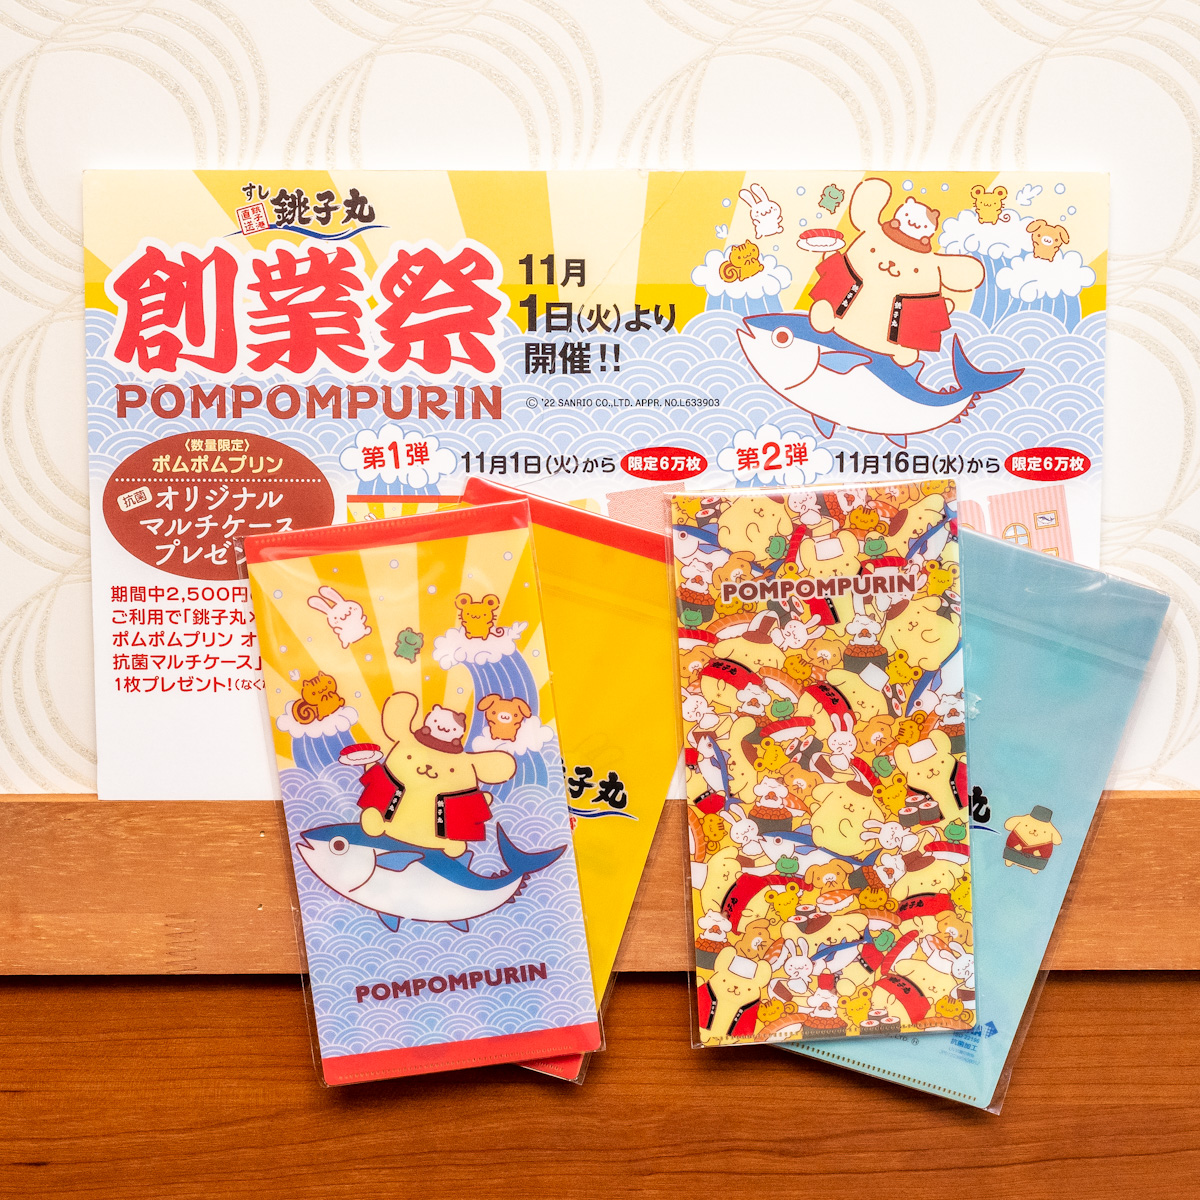 「銚子丸」×「ポムポムプリン」オリジナルマルチケースプレゼント